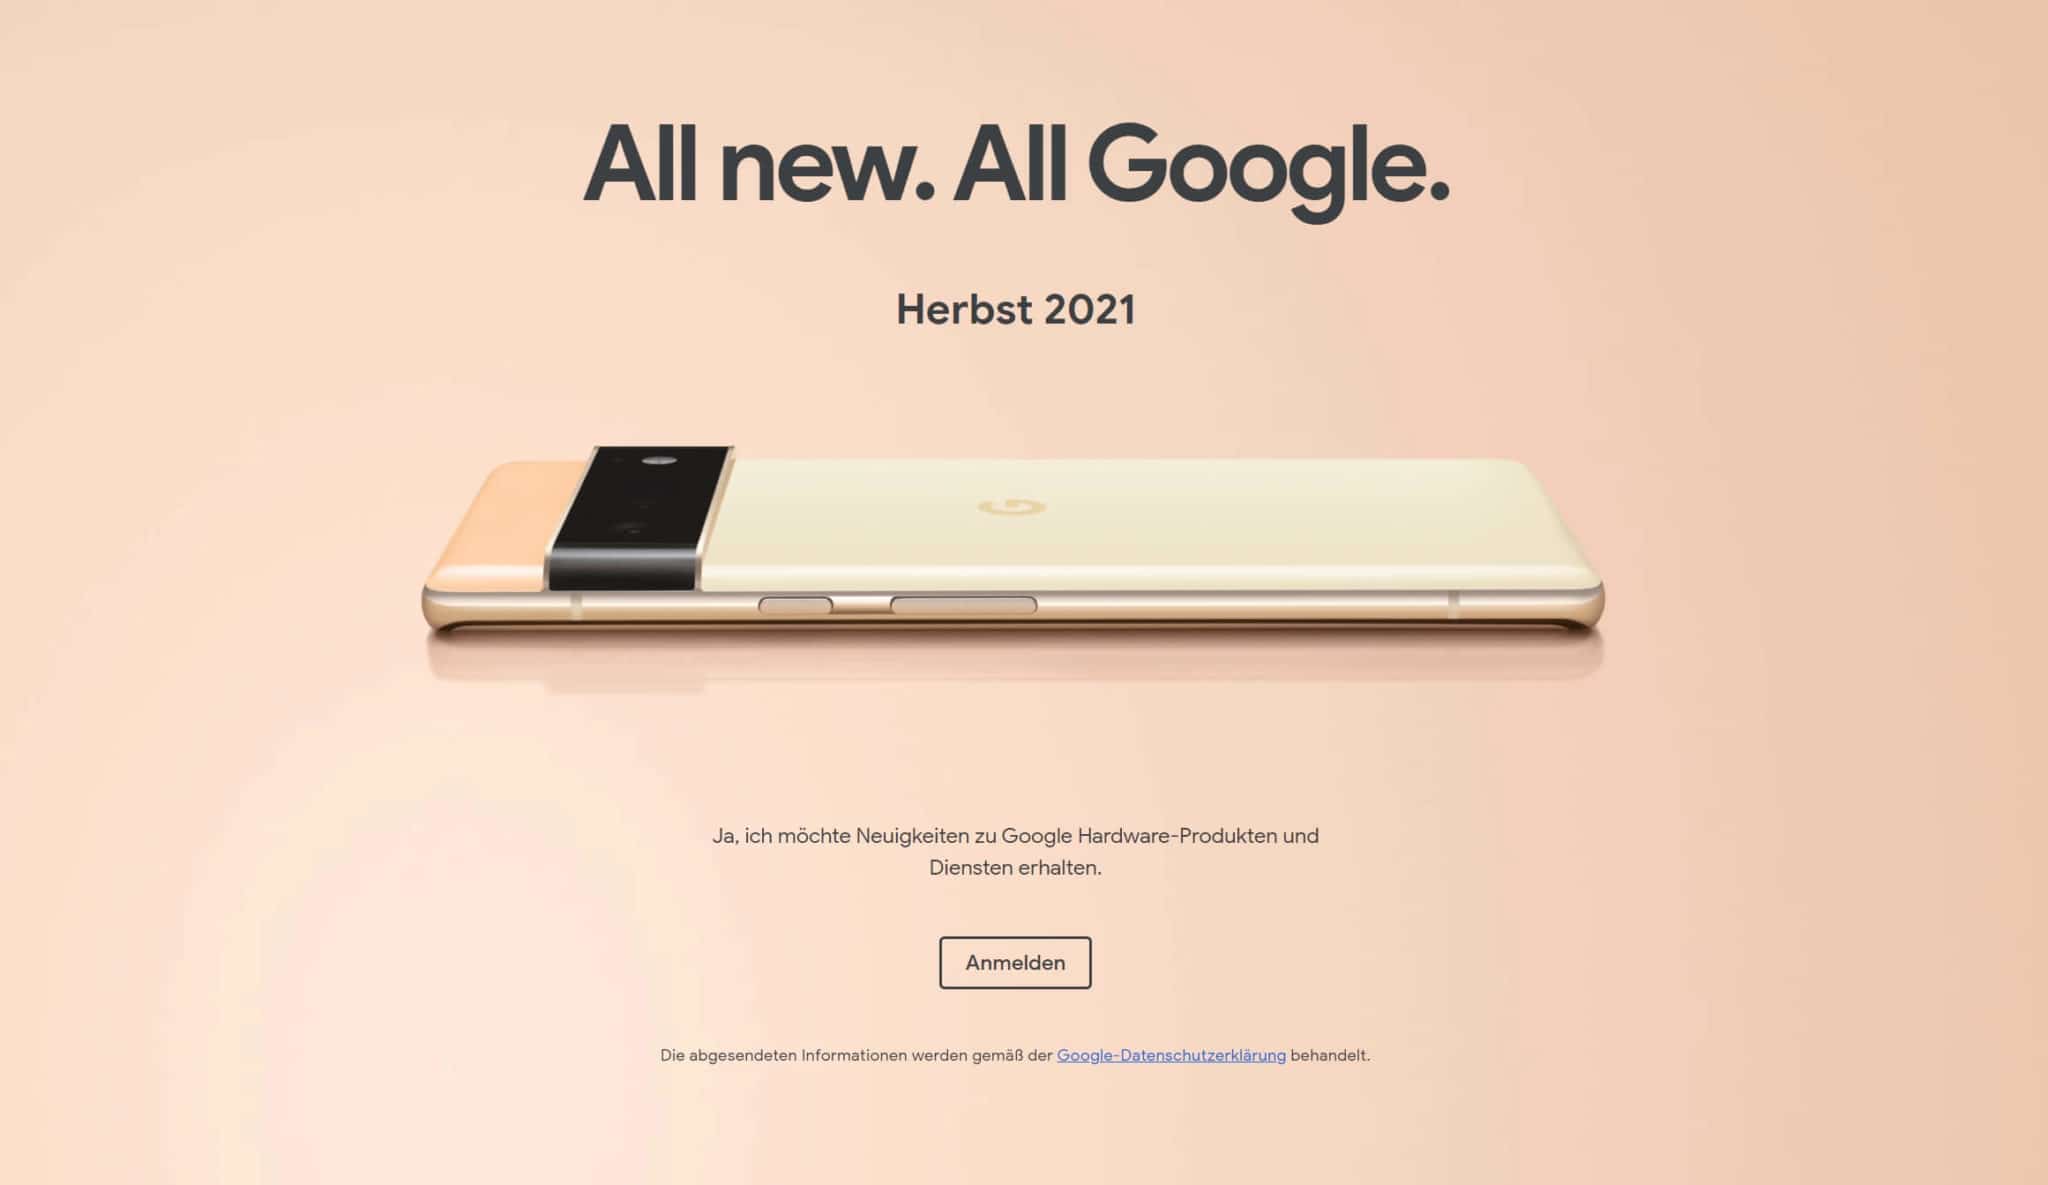 Das Google Pixel 6 und das Pixel 6 Pro erscheinen im Herbst 2021.